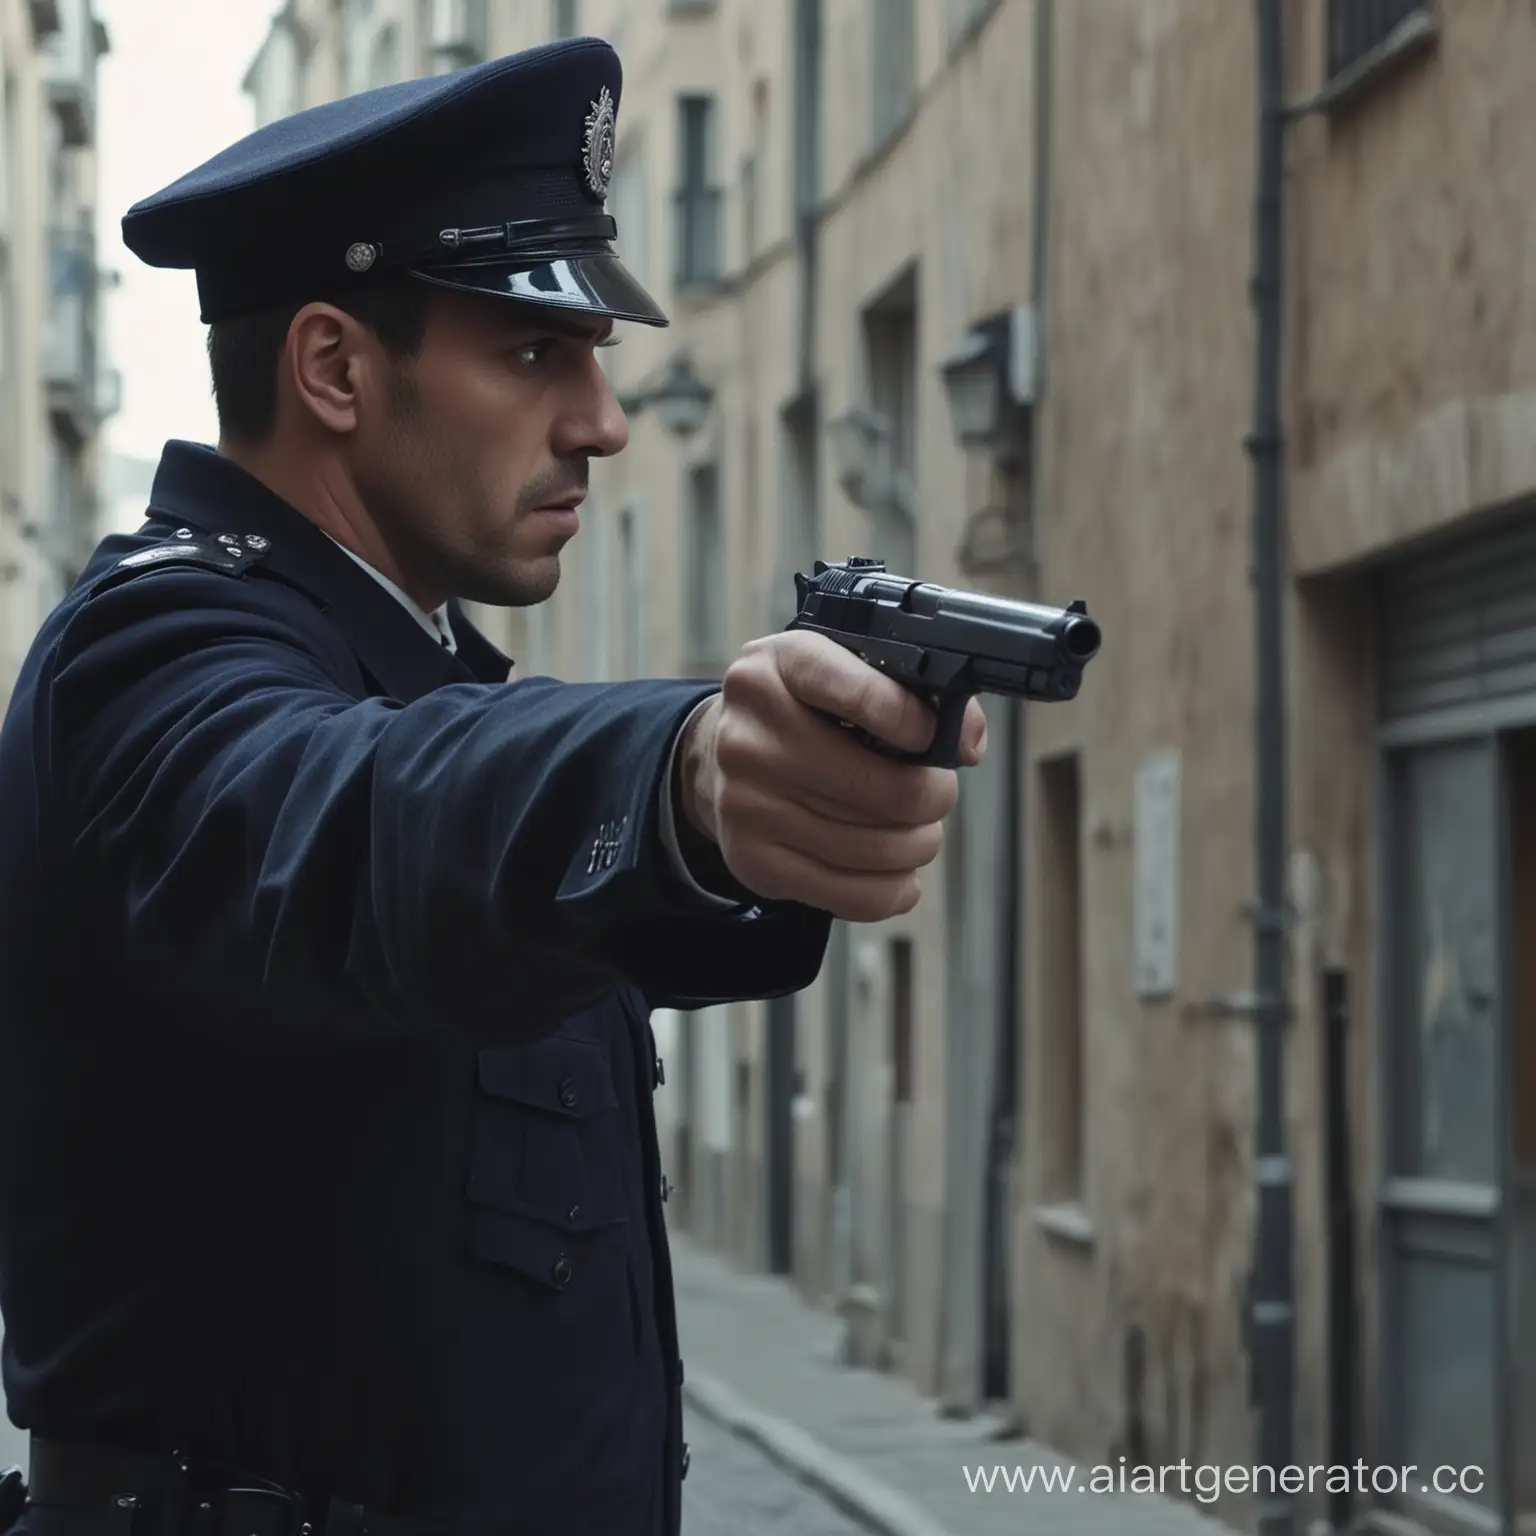 полицейский наставил пистолет на преступника, средняя крупность, кадр из фильма, 4к